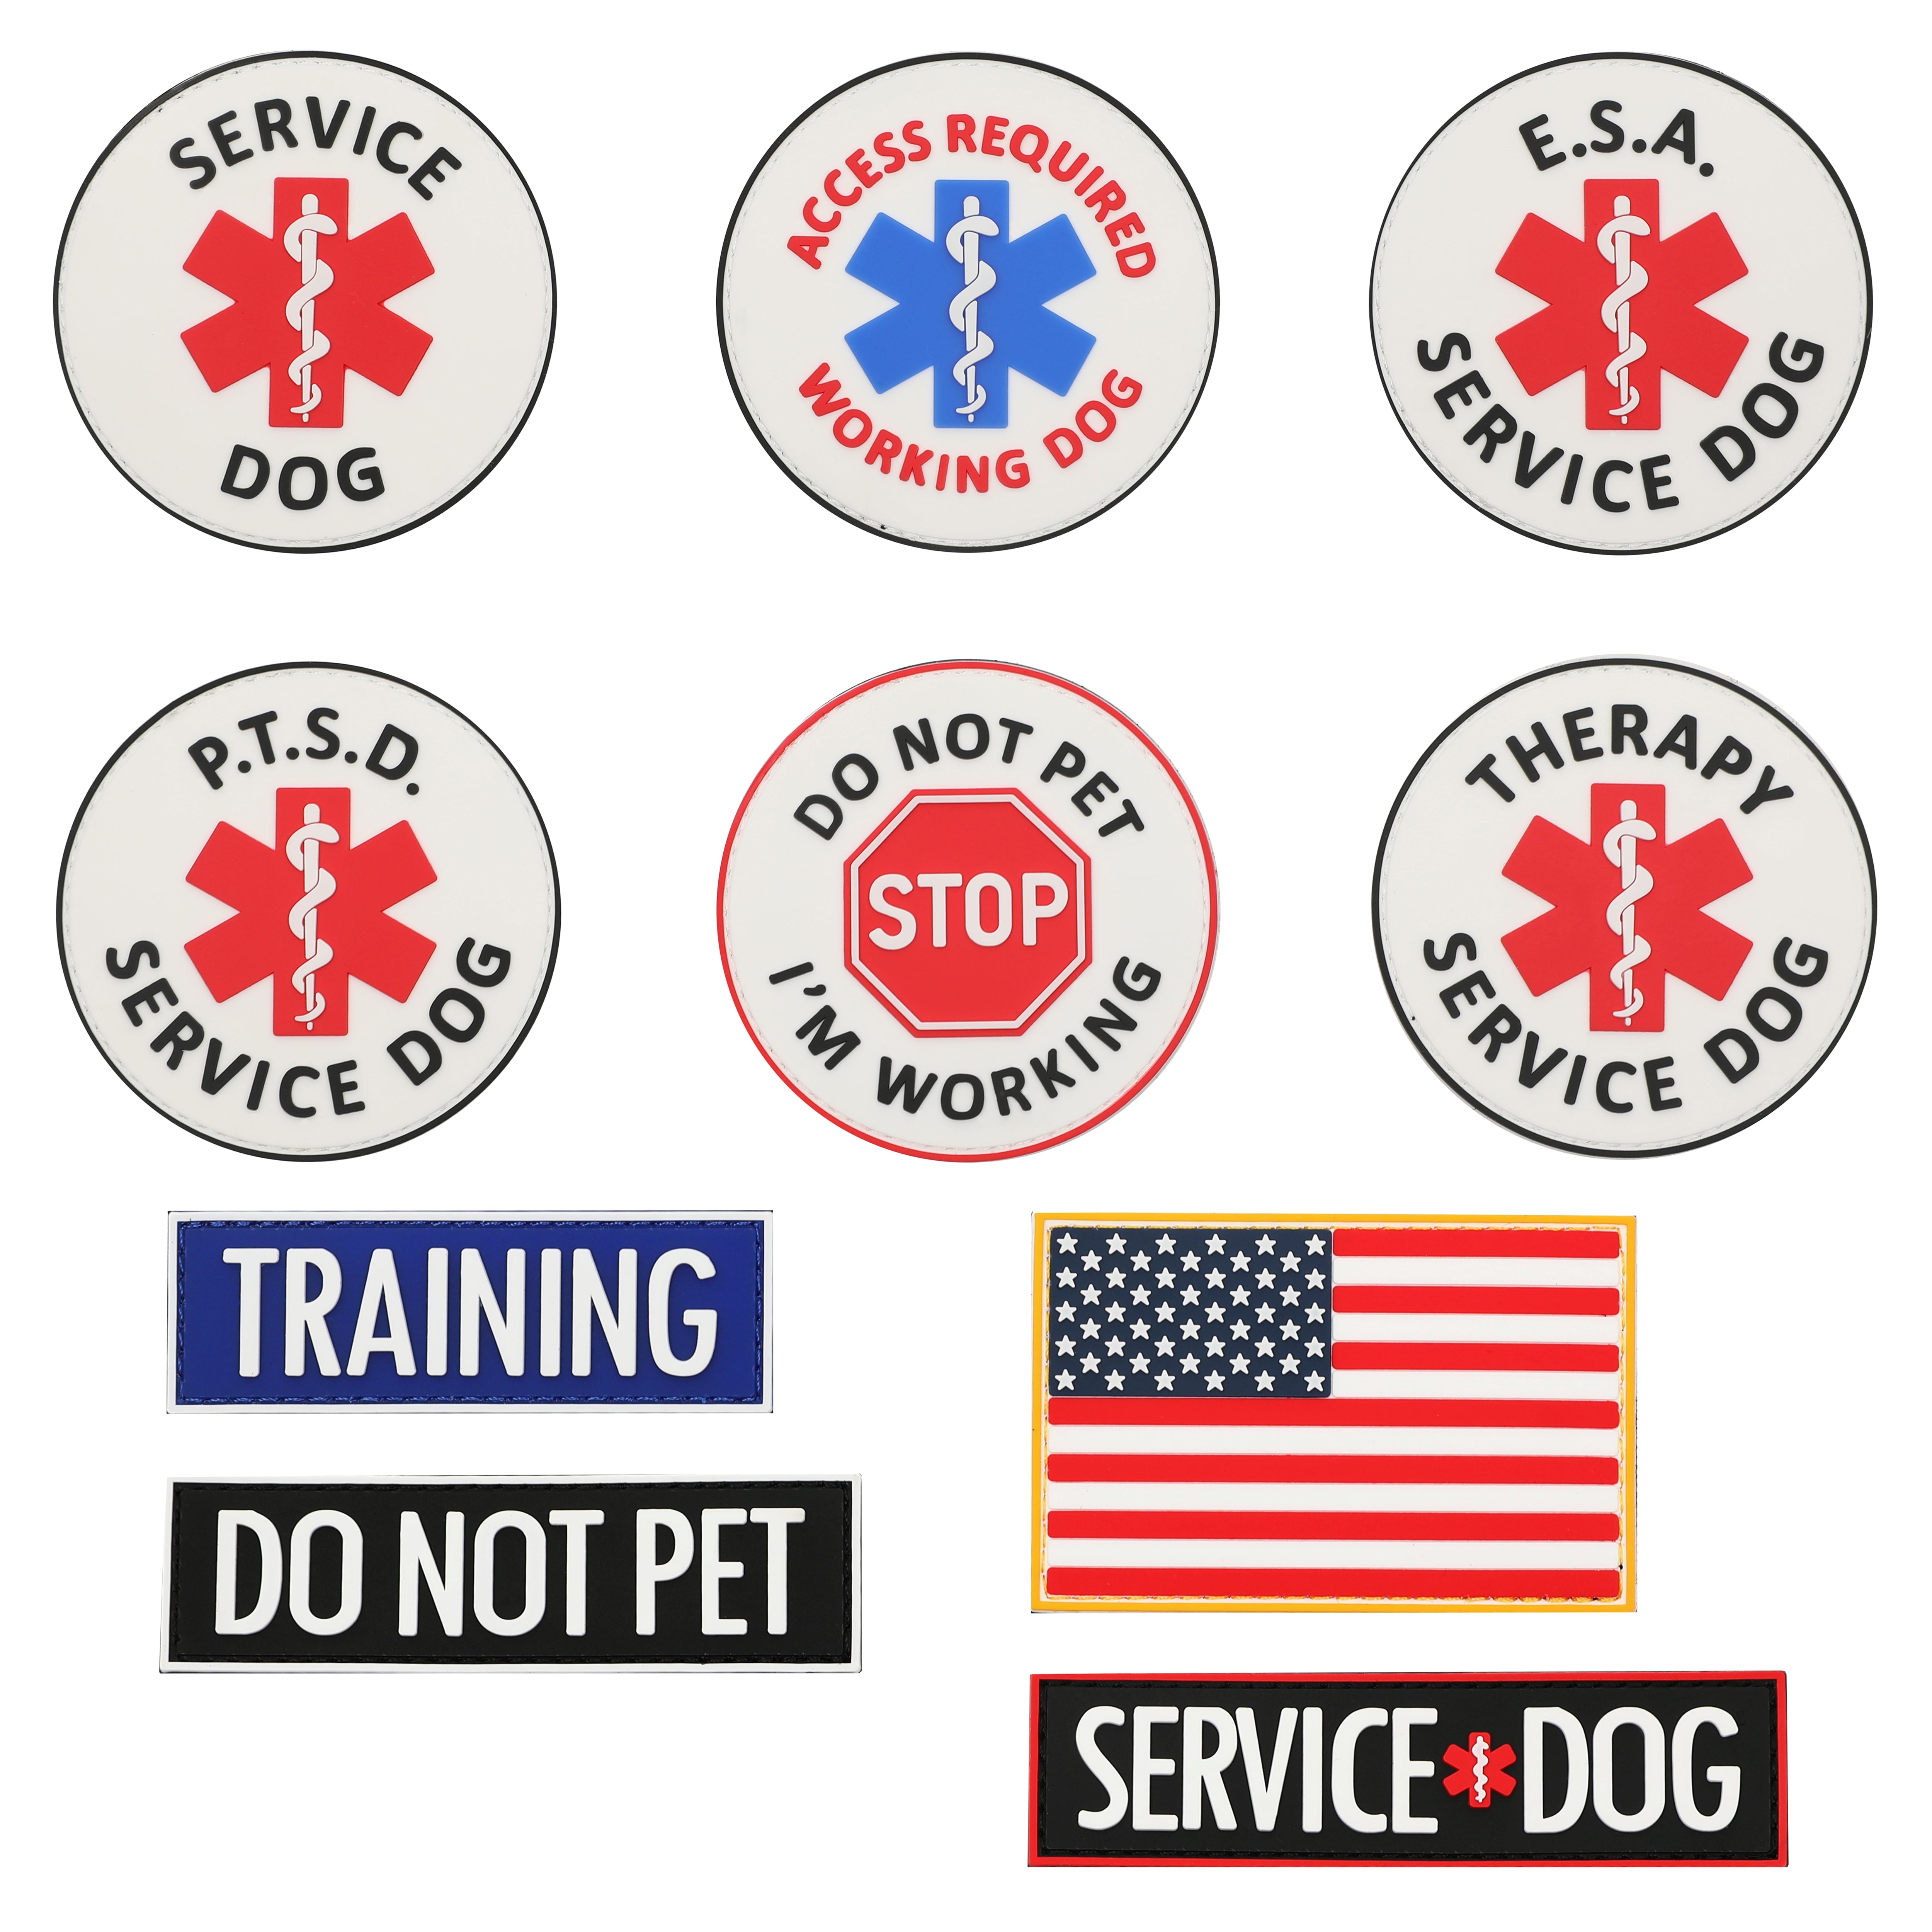 Service Dog Do Not Pet Patch